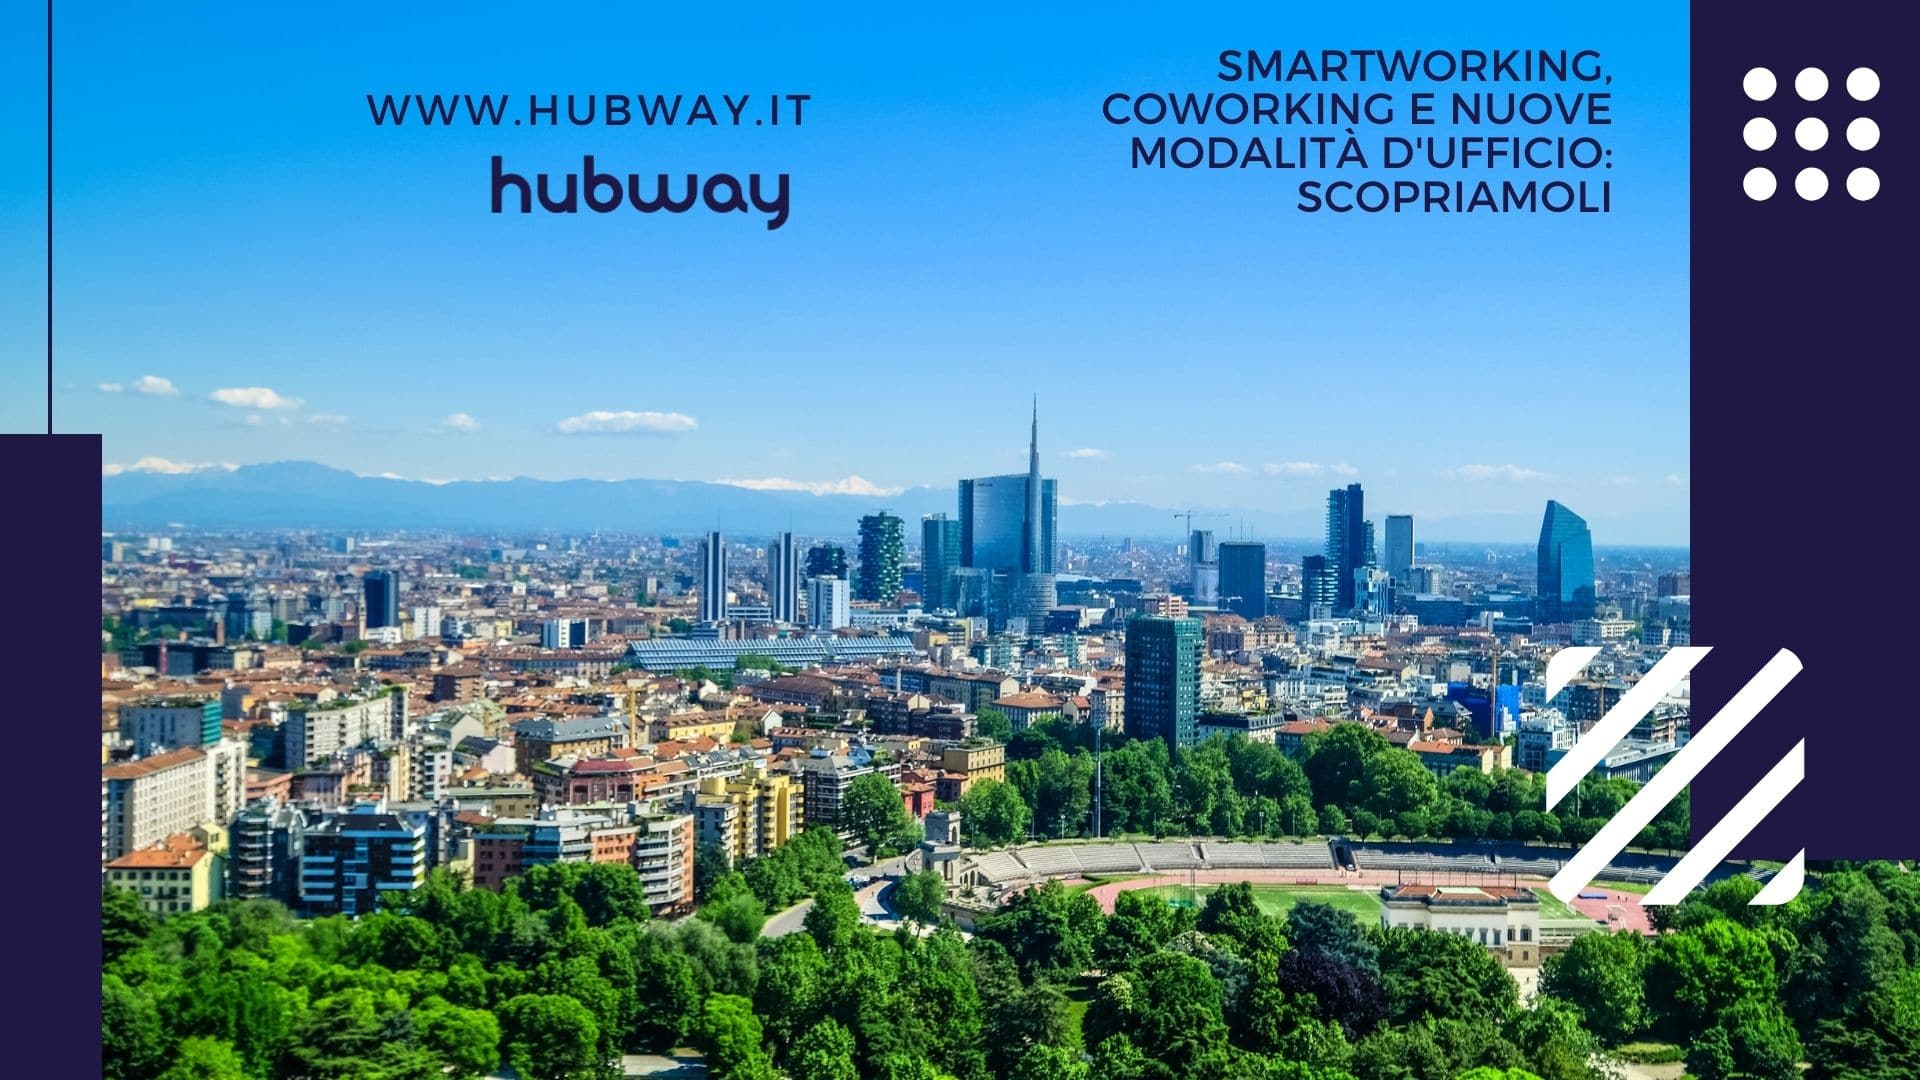 Smartworking, coworking e nuove modalità d'ufficio scopriamoli con Hubway(1)